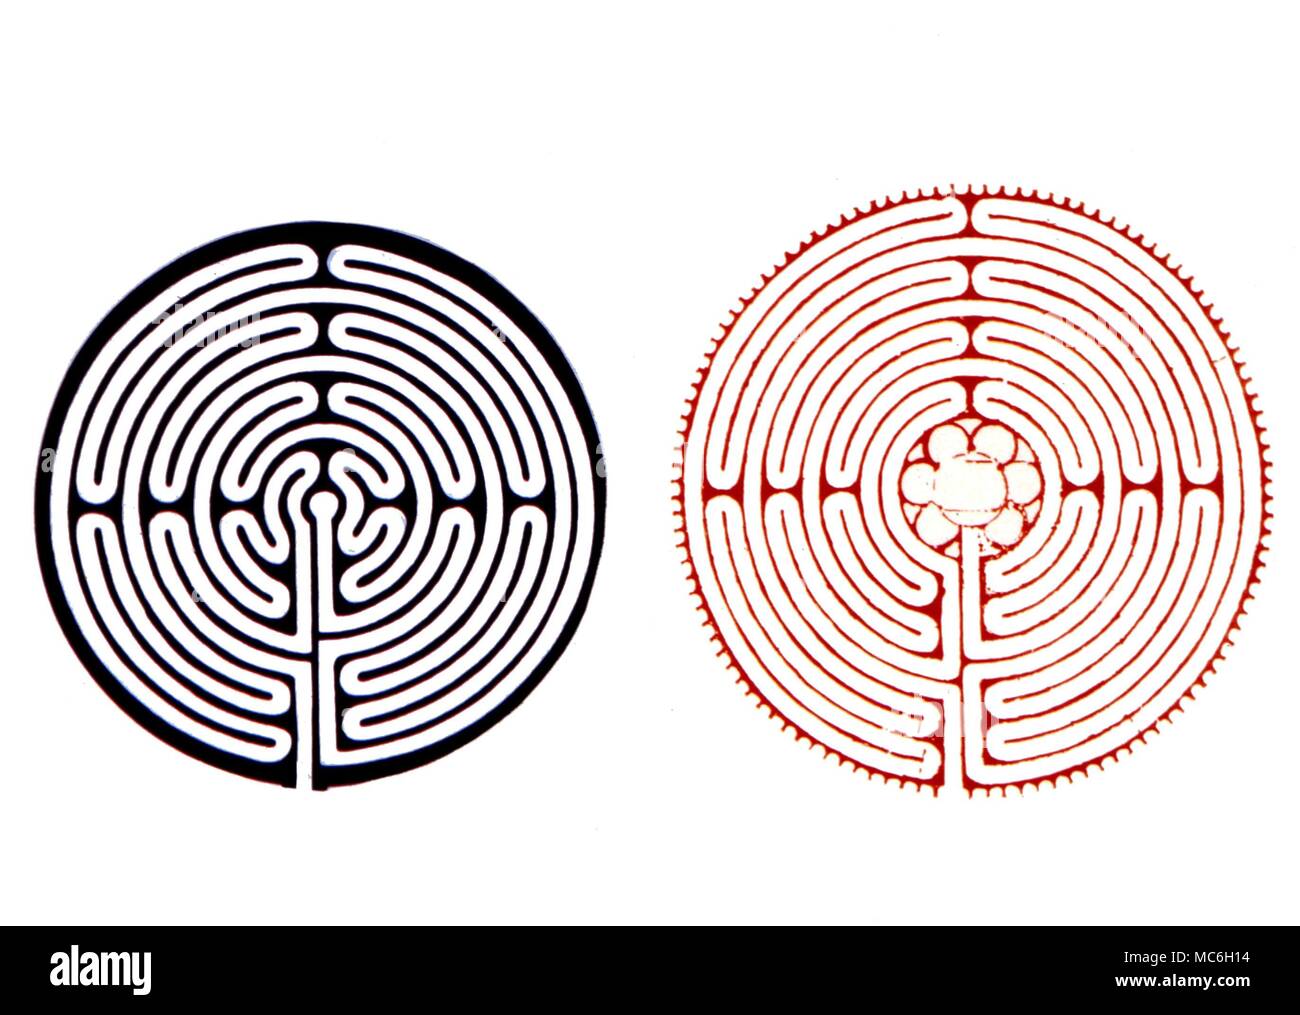 Les plans de masse des labyrinthes à Alkborough (bleu), le labyrinthe de gazon autrement connu sous le nom de Julian's Bower, et le labyrinthe de la cathédrale de Chartres (rouge) Banque D'Images